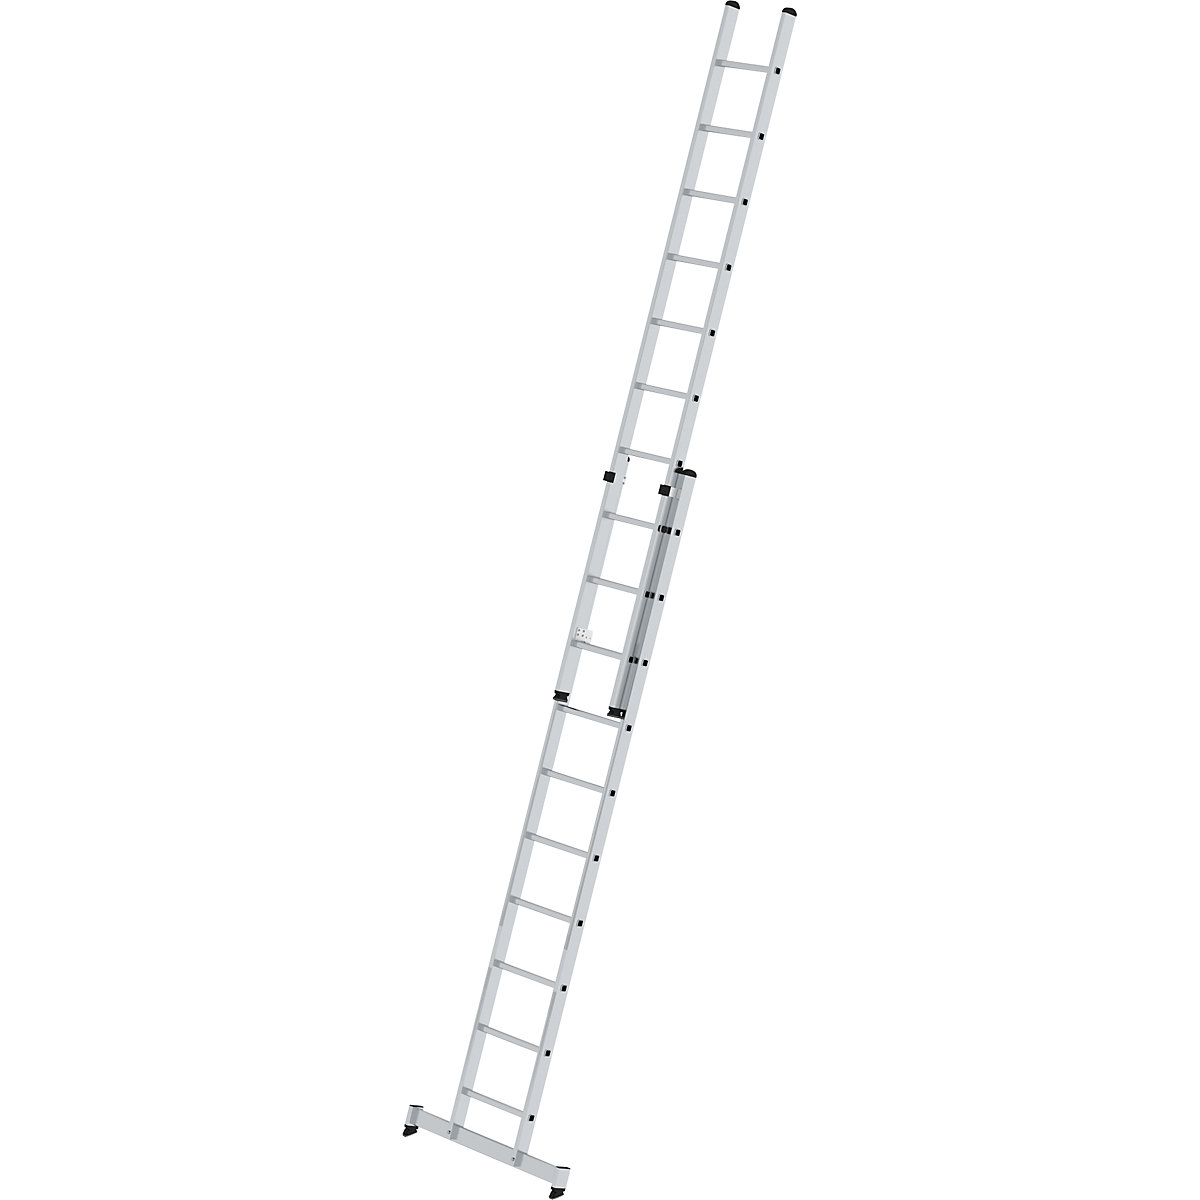 Escada de encosto ajustável em altura – MUNK, escada de regulação por deslize, 2 peças, 2 x 10 degraus, com travessa nivello®-6